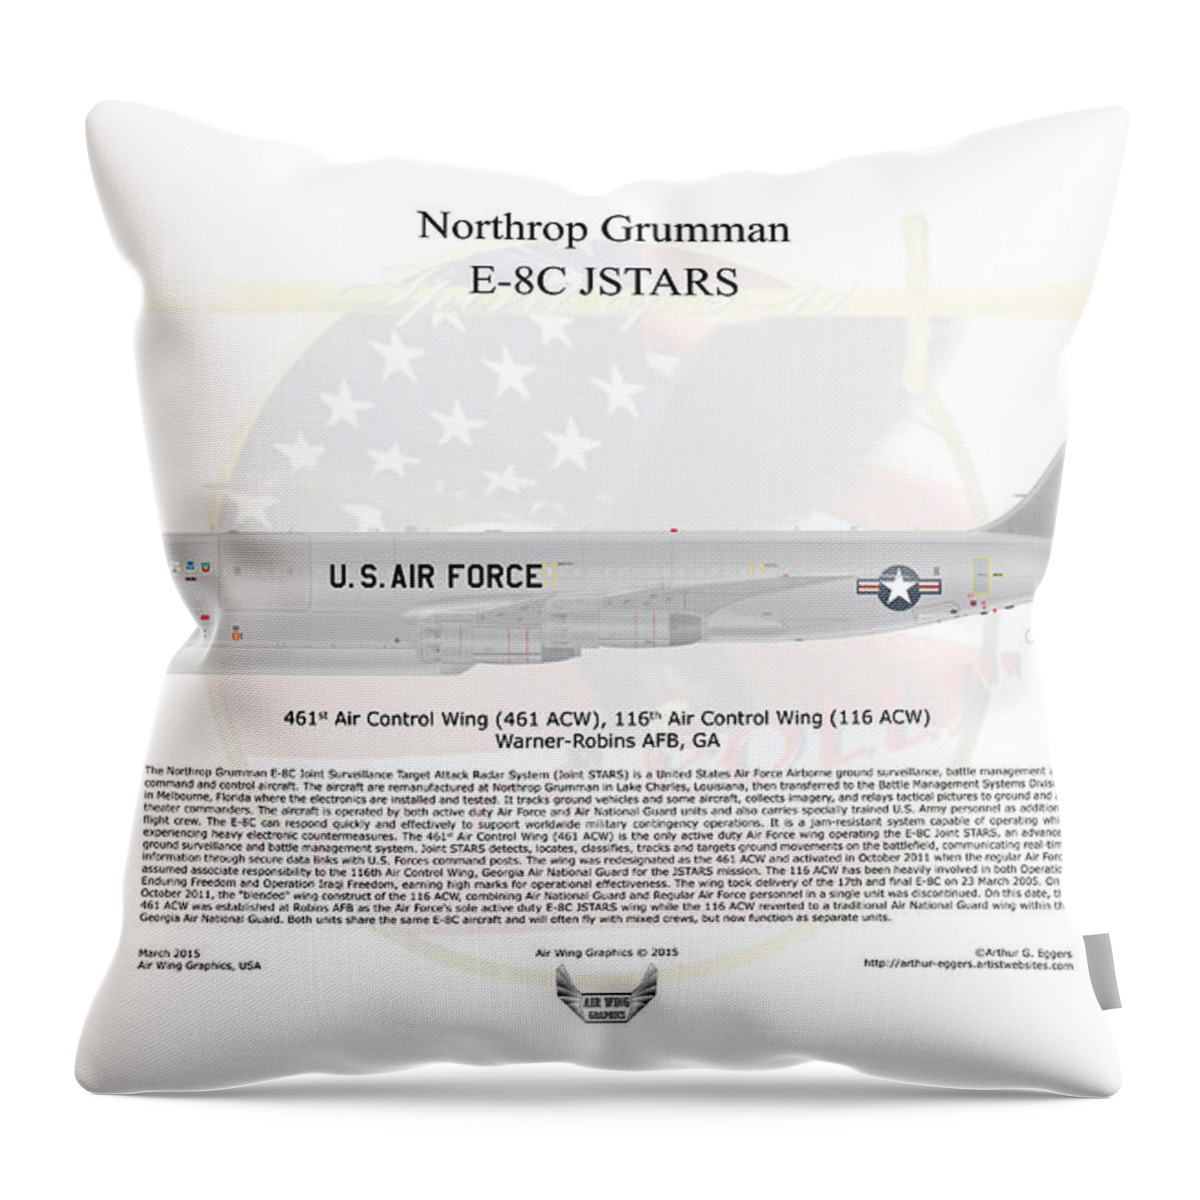 Northrop Grumman Throw Pillow featuring the digital art Northrop Grumman E-8C JSTARS by Arthur Eggers